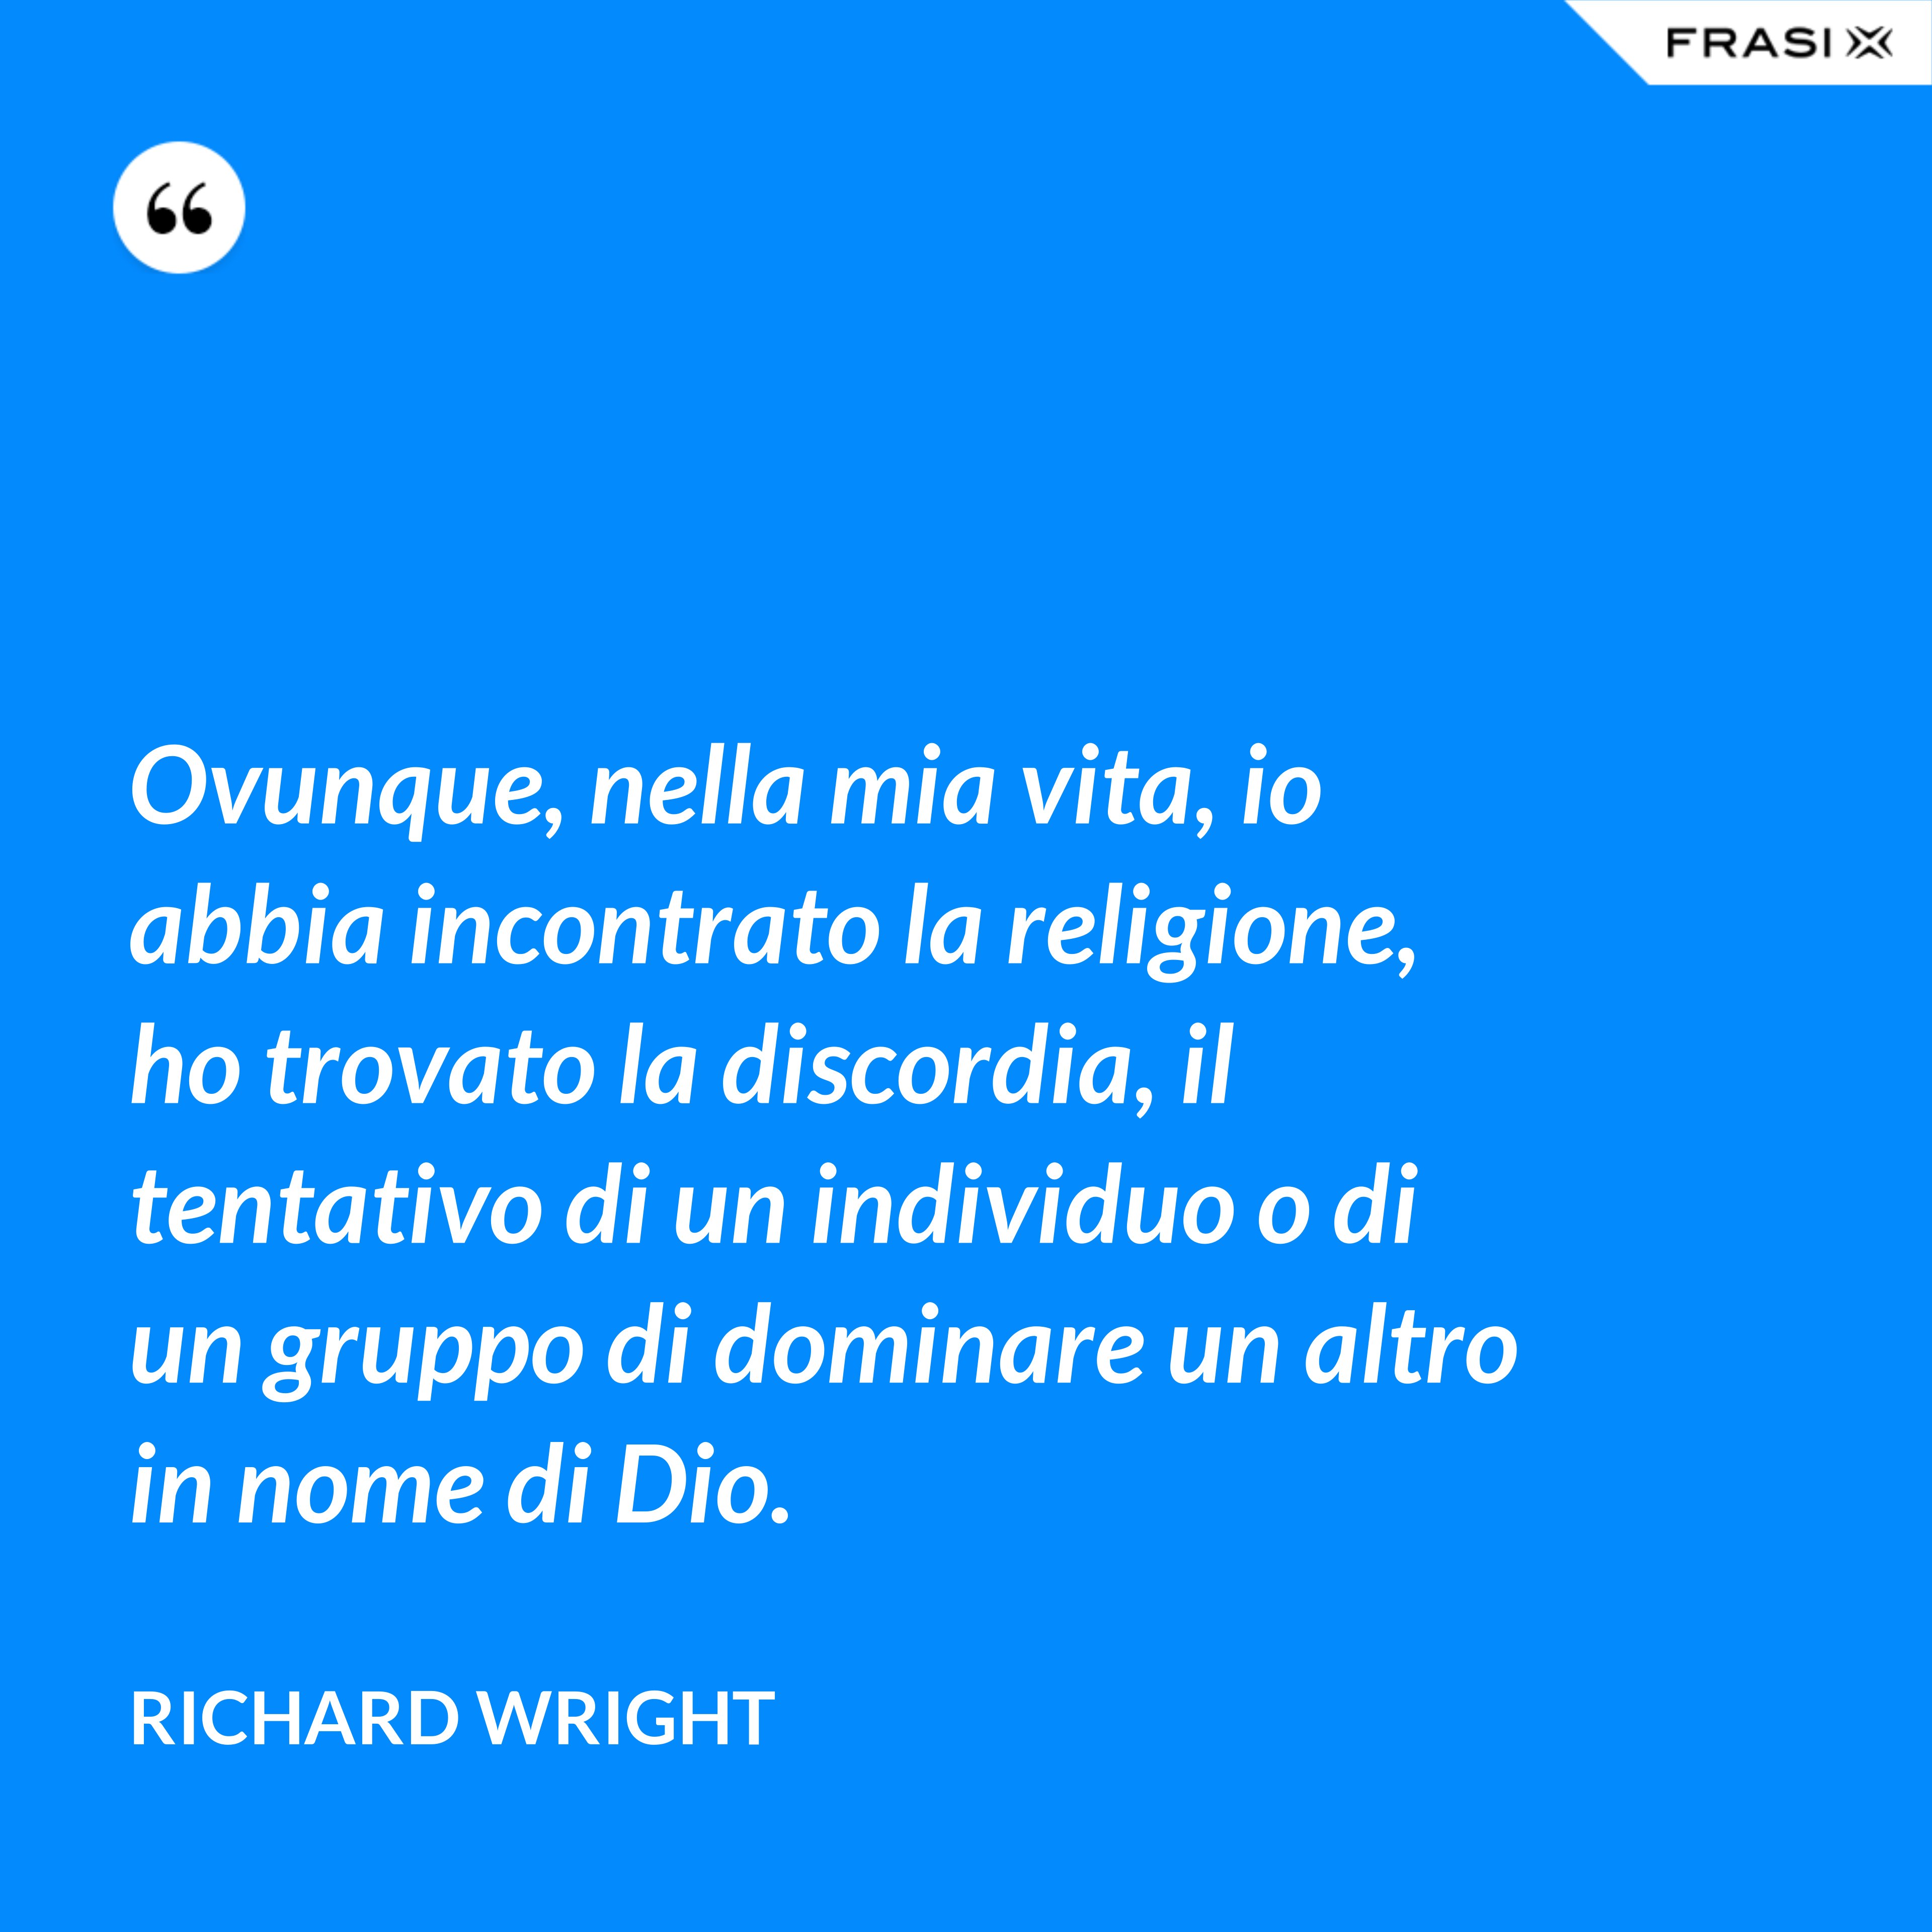 Ovunque, nella mia vita, io abbia incontrato la religione, ho trovato la discordia, il tentativo di un individuo o di un gruppo di dominare un altro in nome di Dio. - Richard Wright